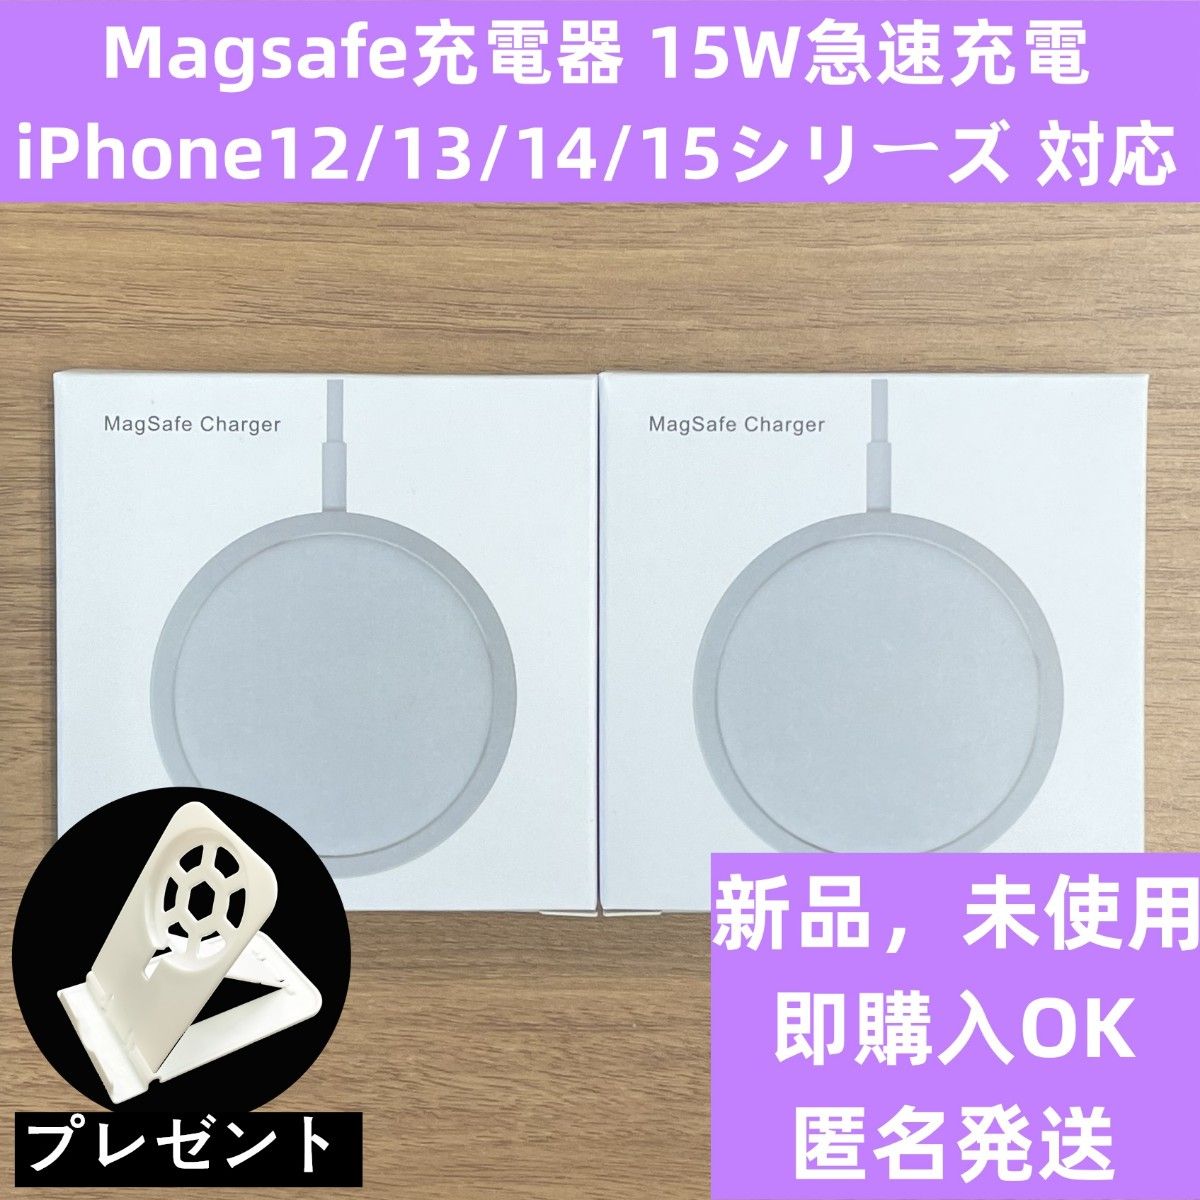 Magsafe マグセーフiPhone12/13/14/15シリーズ ワイヤレス充電器 マグセーフ 置くだけ充電 2本セット